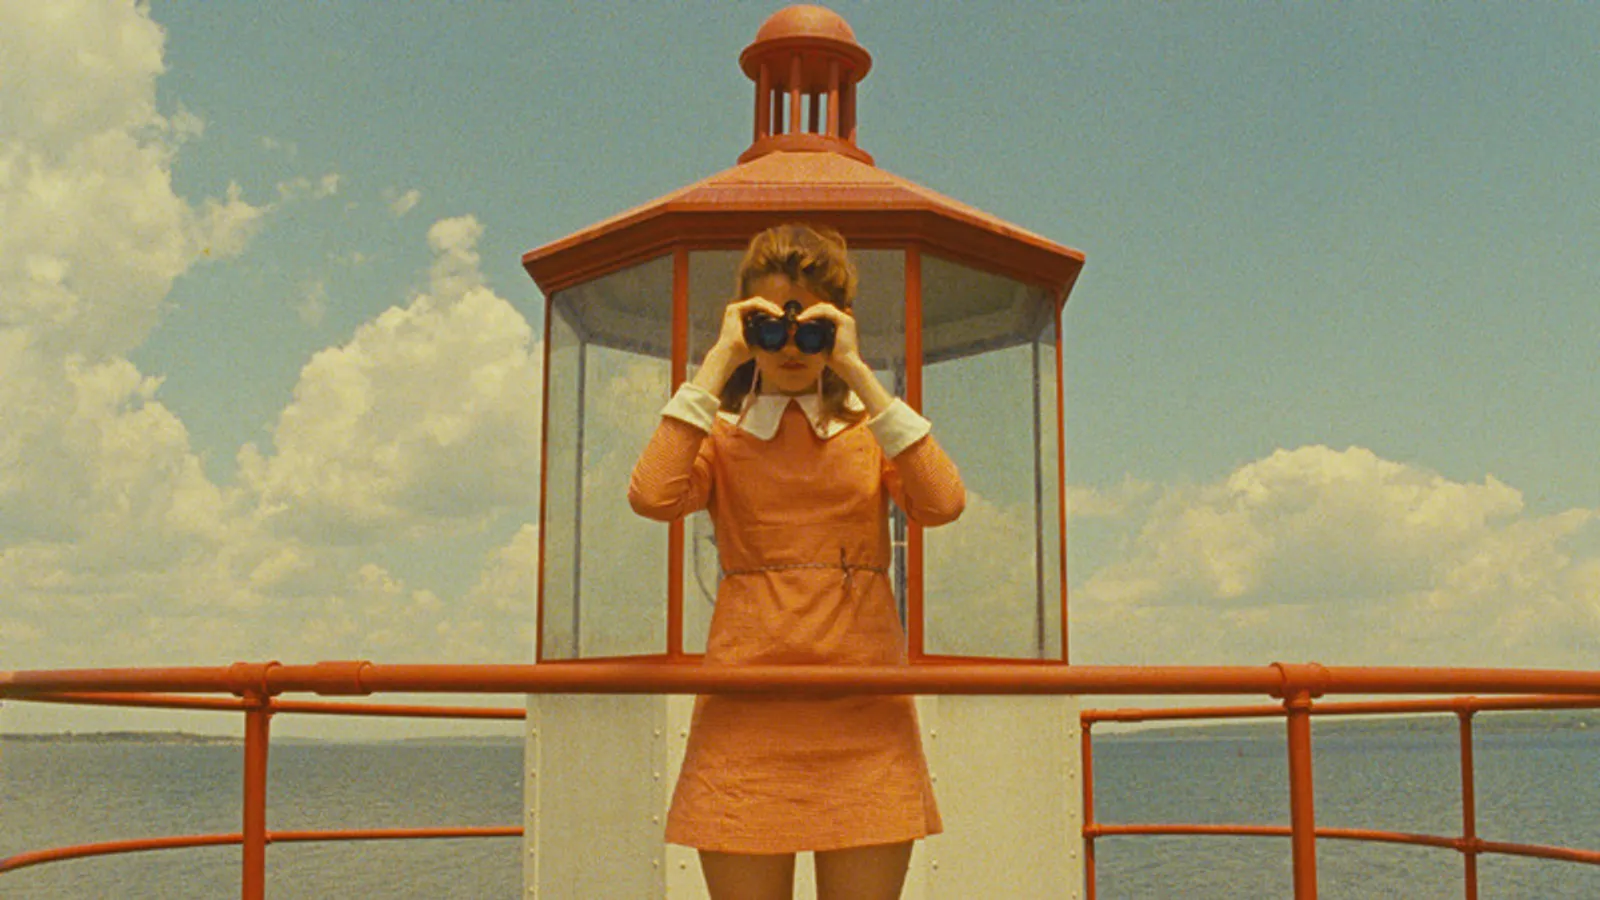 Daftar Film Terbaik Wes Anderson, Sutradara dengan Sudut Pandang Unik